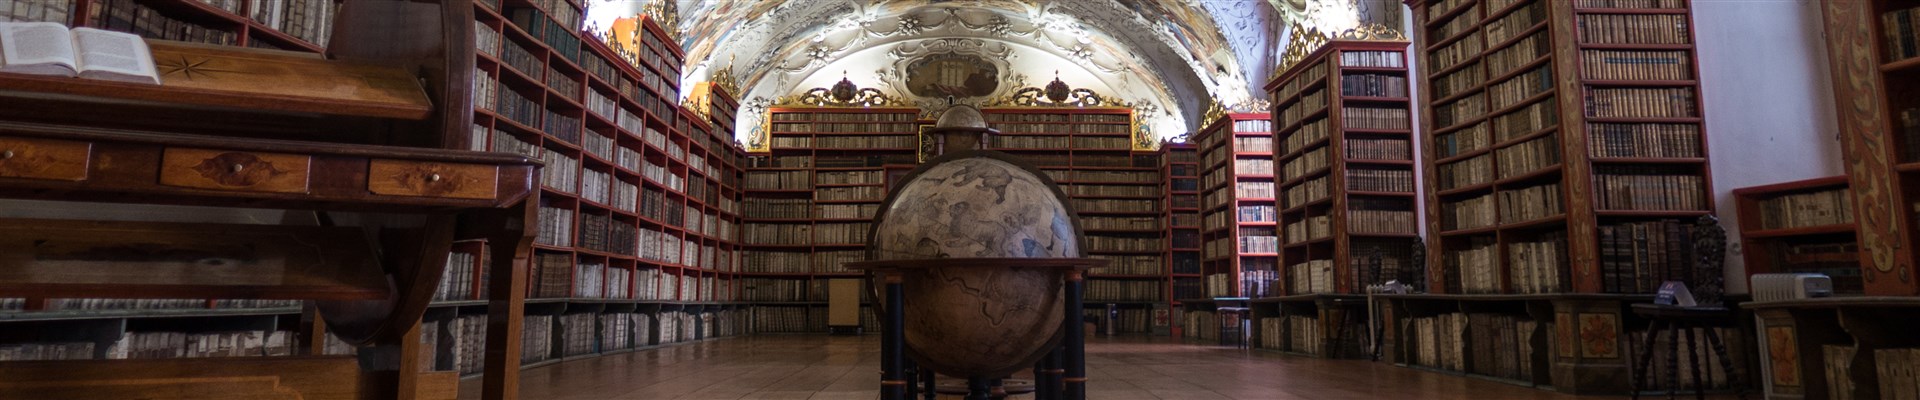 La Bibliothèque du monastère de Strahov - Avantgarde Prague